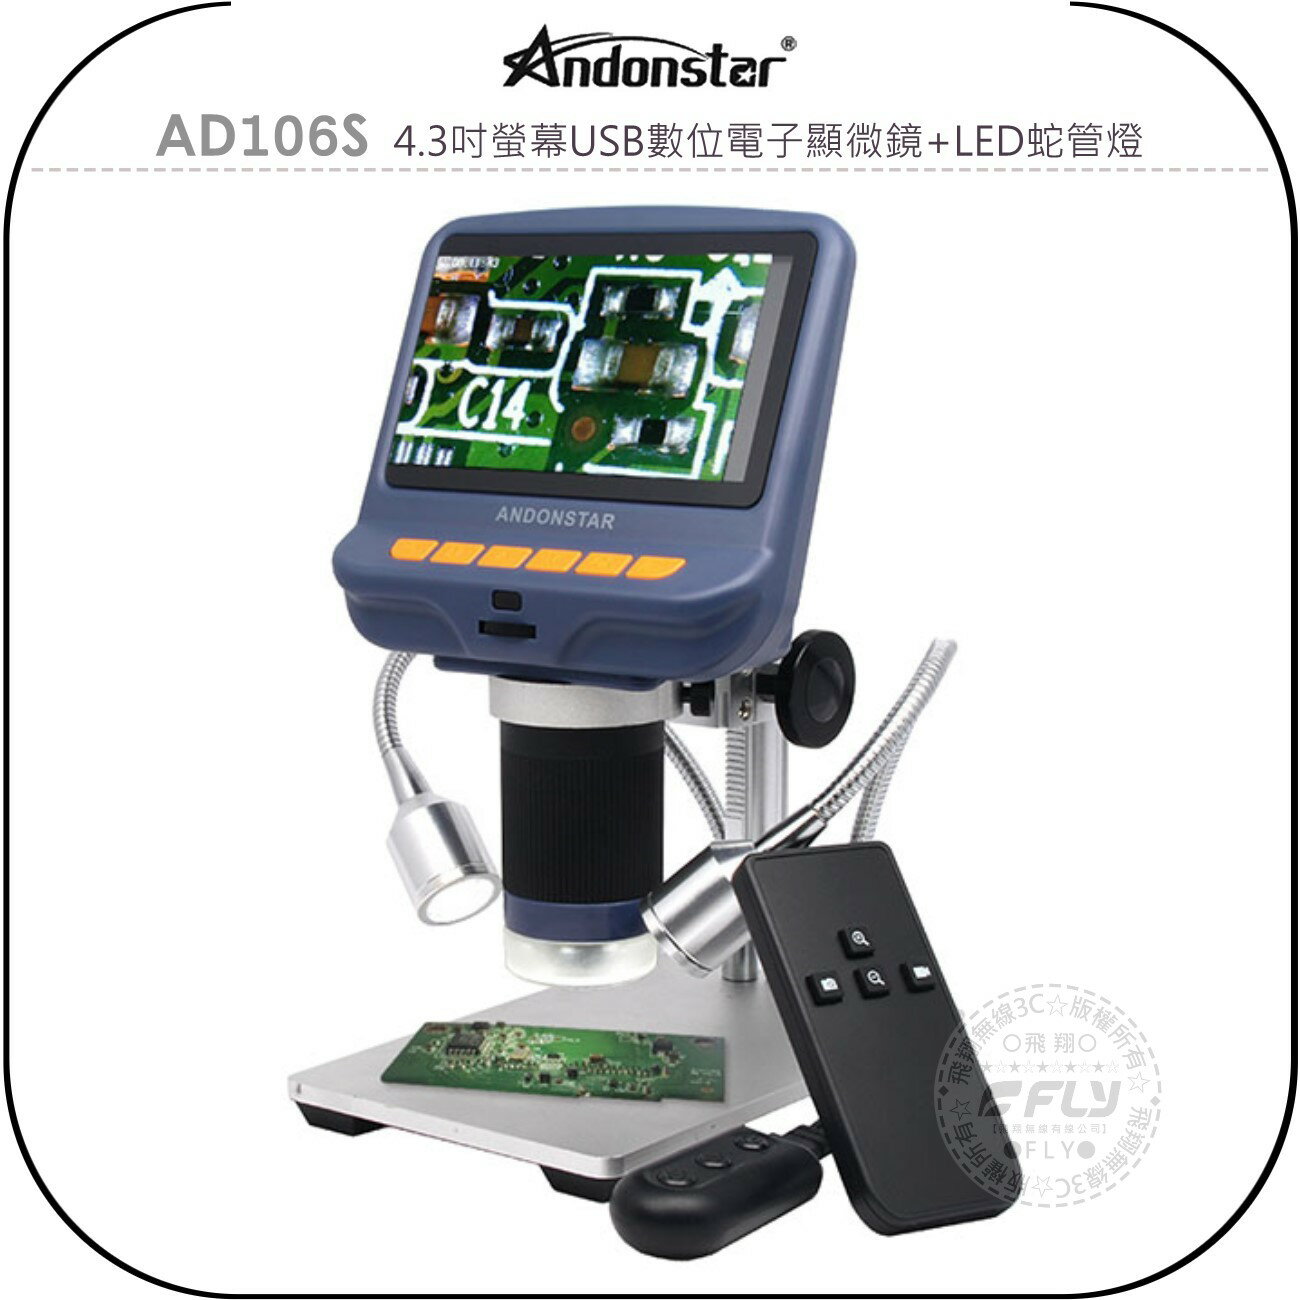 《飛翔無線3C》Andonstar AD106S 4.3吋螢幕USB數位電子顯微鏡+LED蛇管燈◉公司貨◉清晰顯示